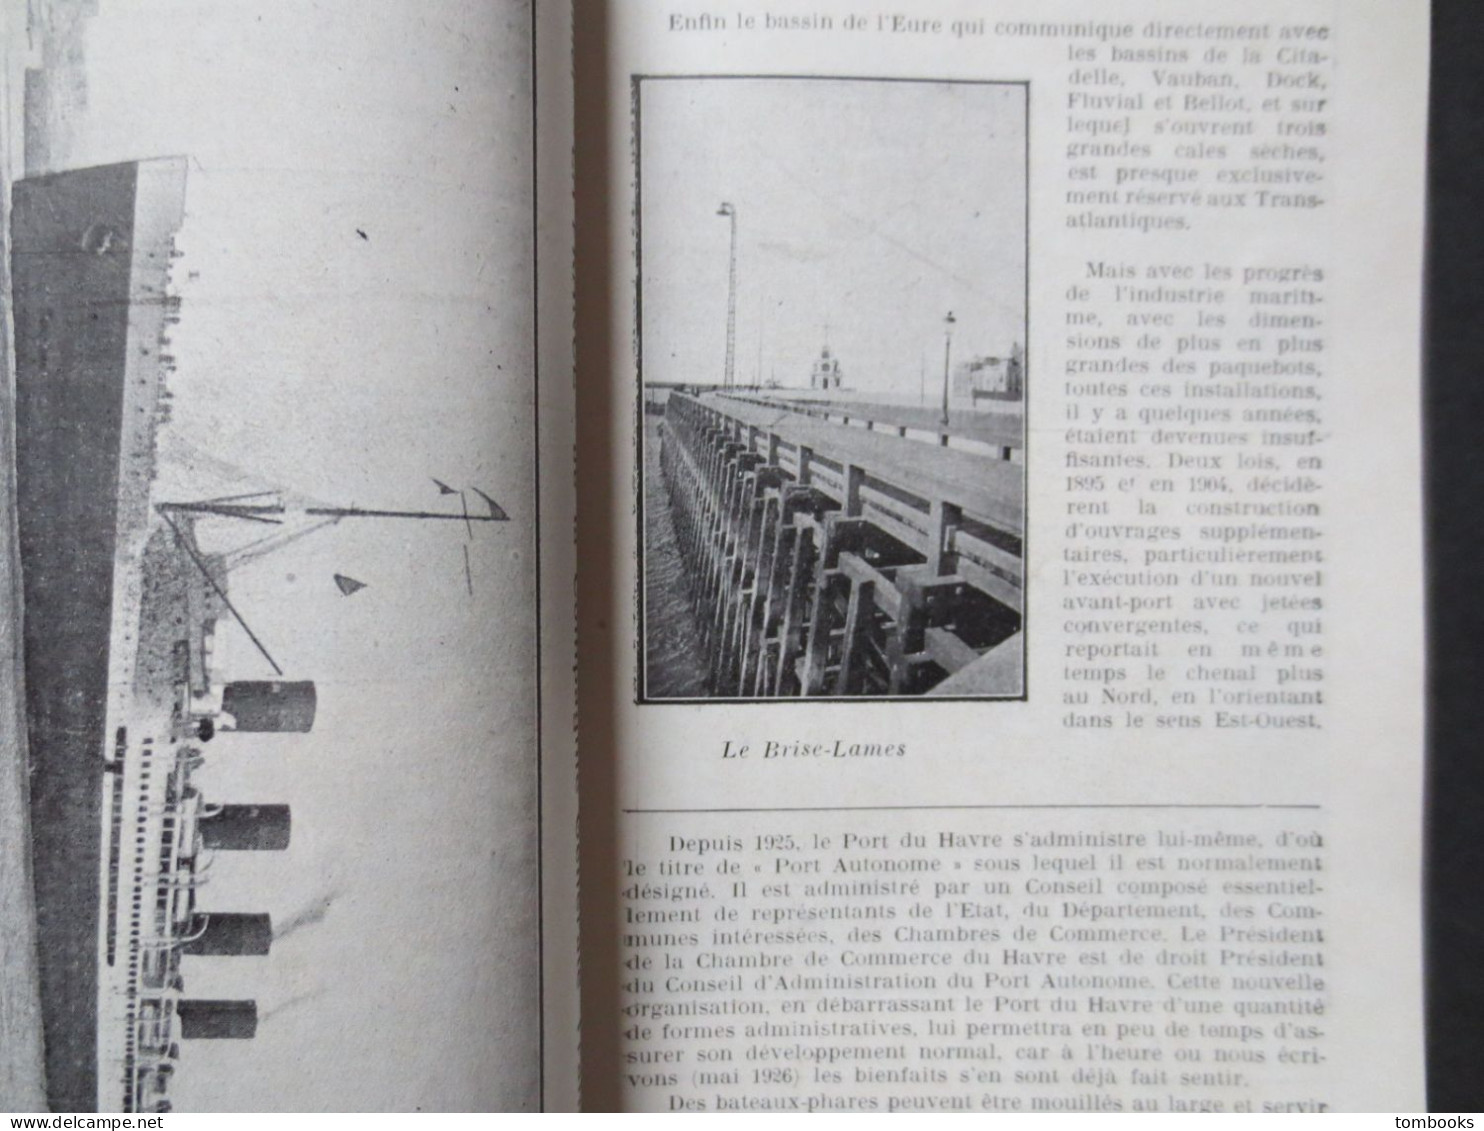 Le Havre - Guide du Havre & de la Région par Gaston Hauville - 1929 - B.E -